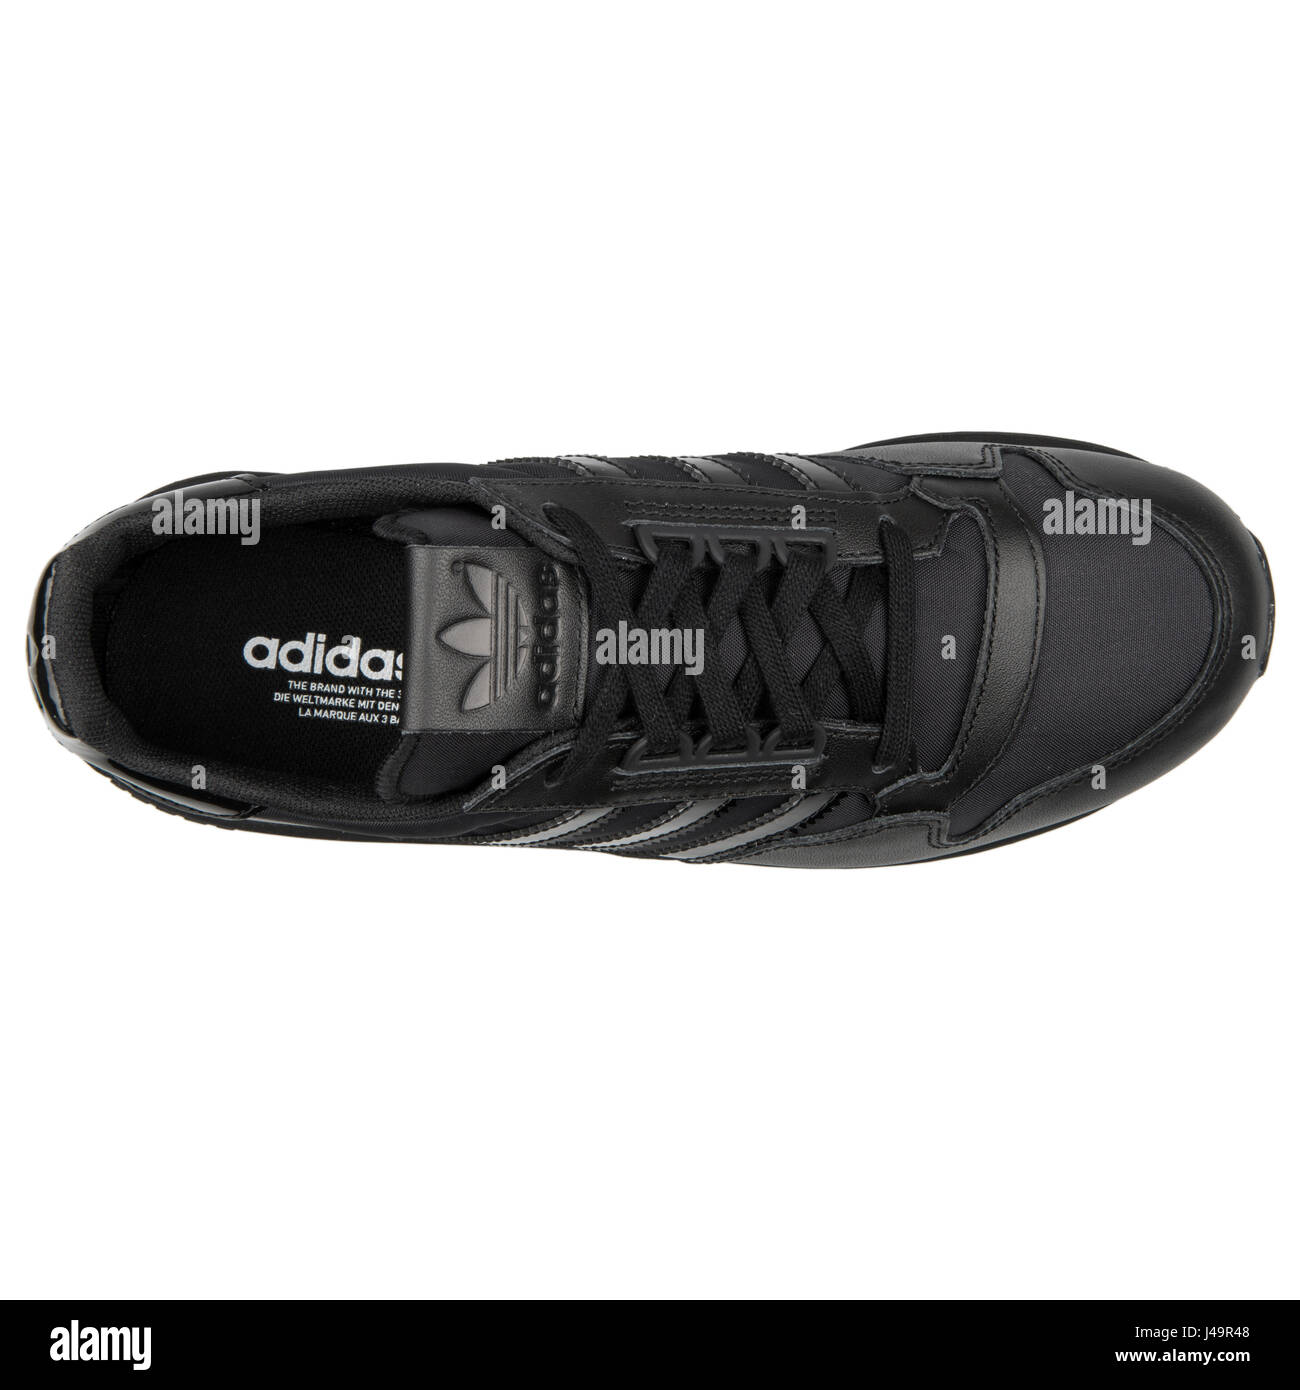 Adidas ZX 500 OG W Black - B25601 Stock Photo - Alamy